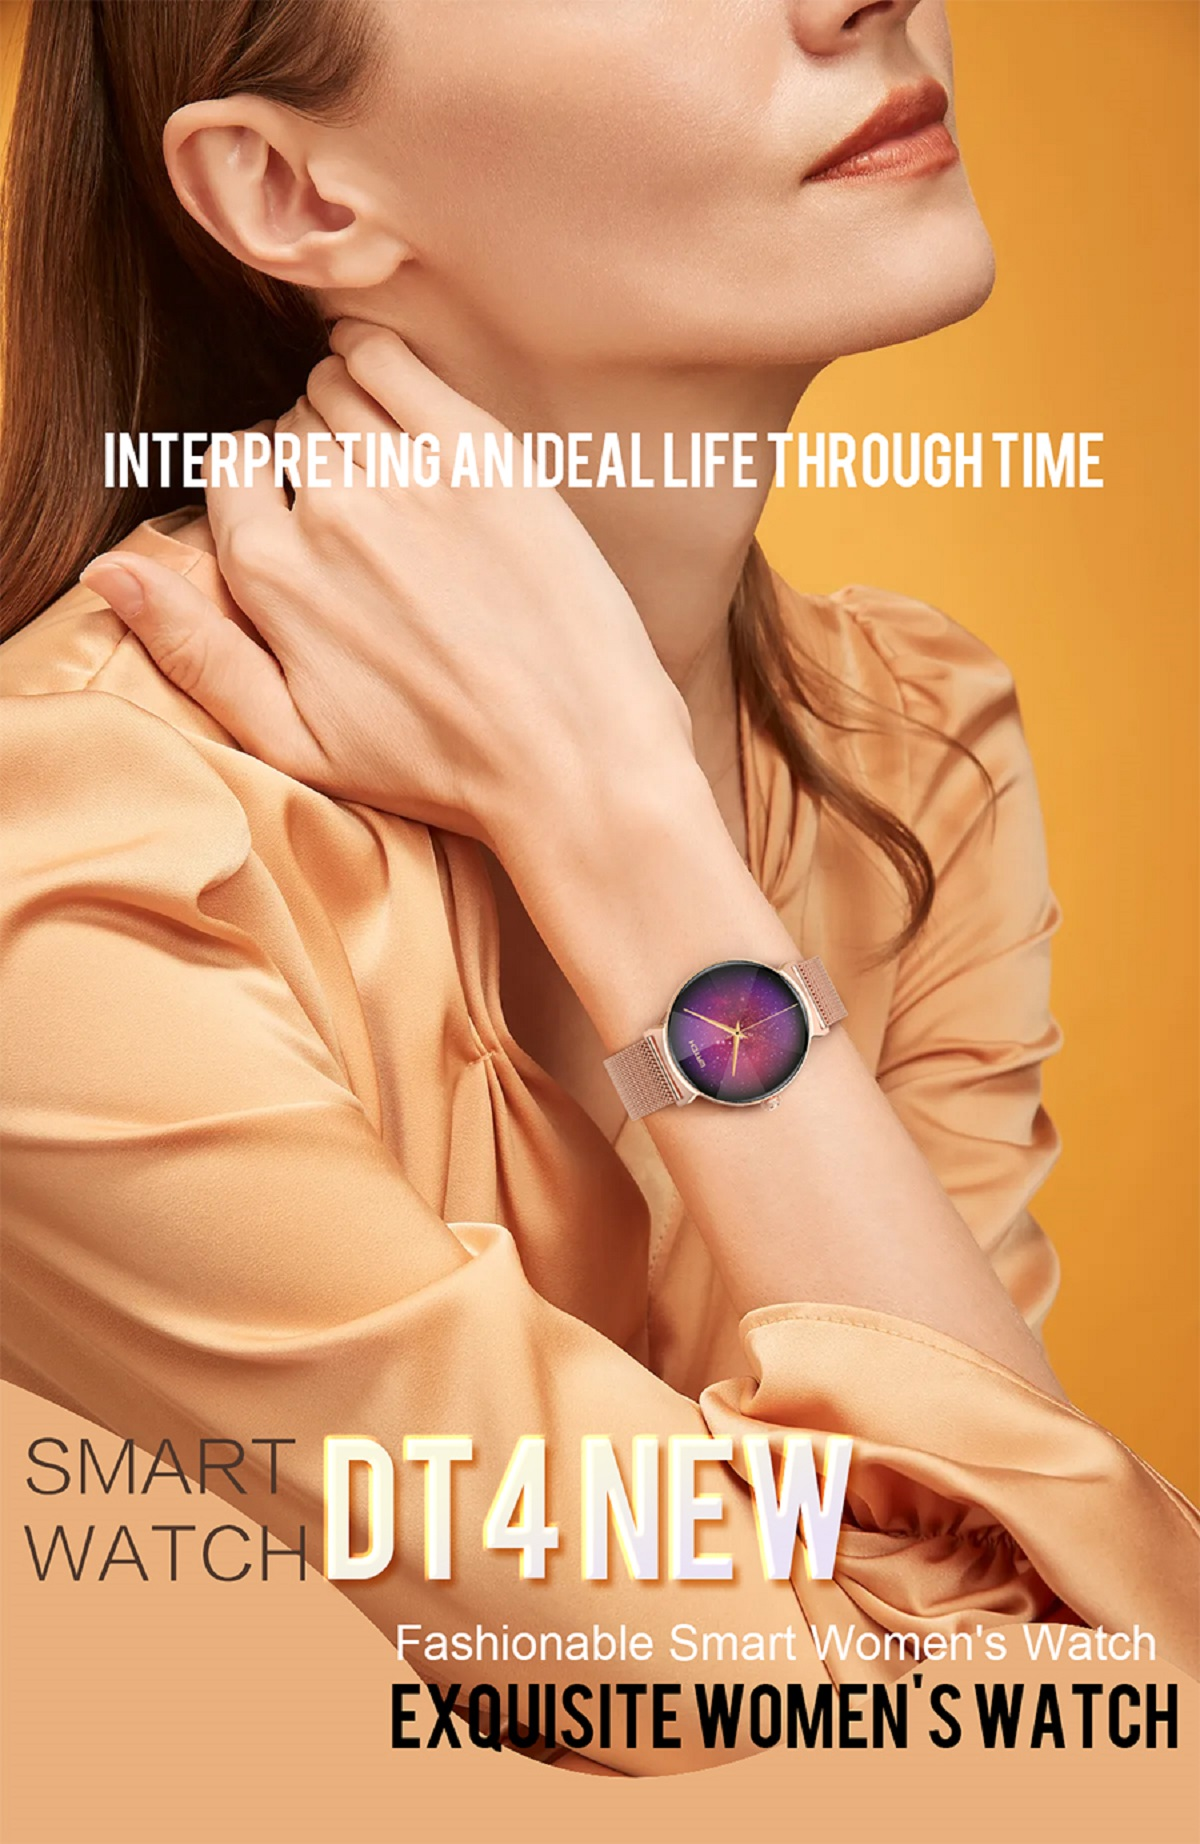 MIRUX DT4New BT-Anruf Rund Pink Aktivitätstracker Silikon, 240mm, Gold Smartwatch